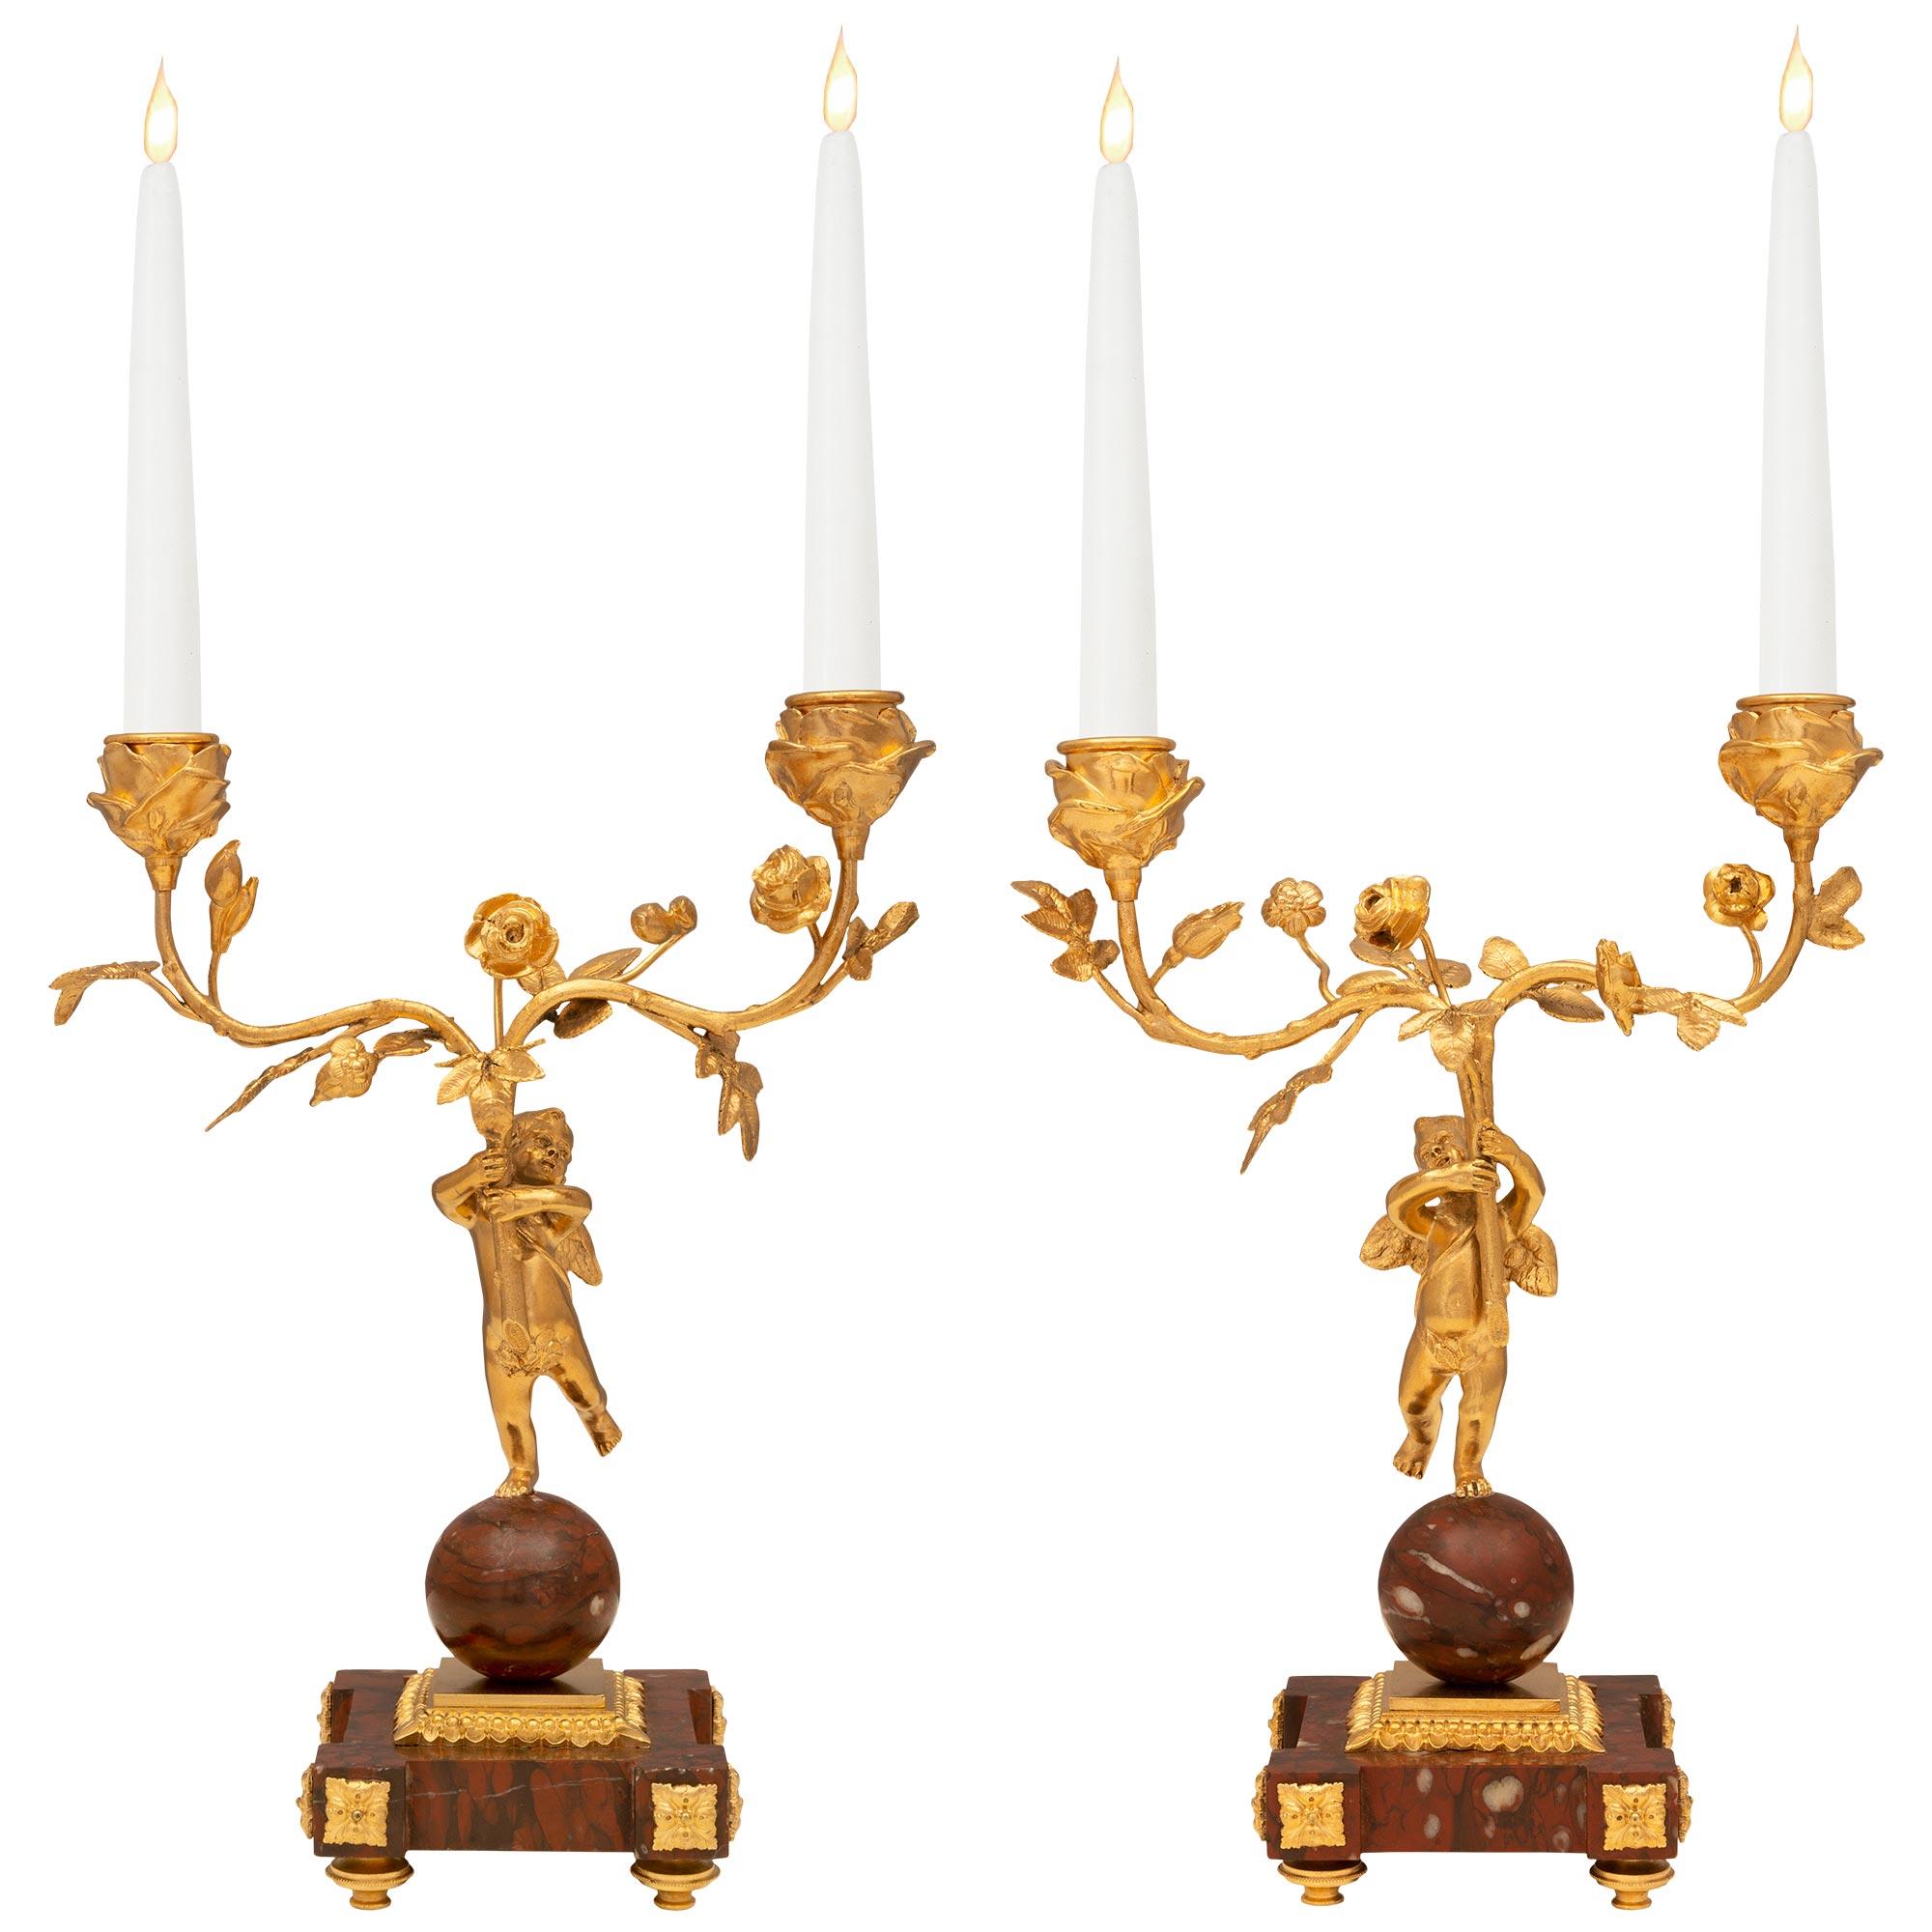 Une étonnante et très charmante paire de candélabres français du 19ème siècle, de style Louis XVI et d'époque Belle Époque, en bronze doré et marbre Rouge Griotte. Les candélabres à deux bras sont surélevés par de belles bases carrées en marbre